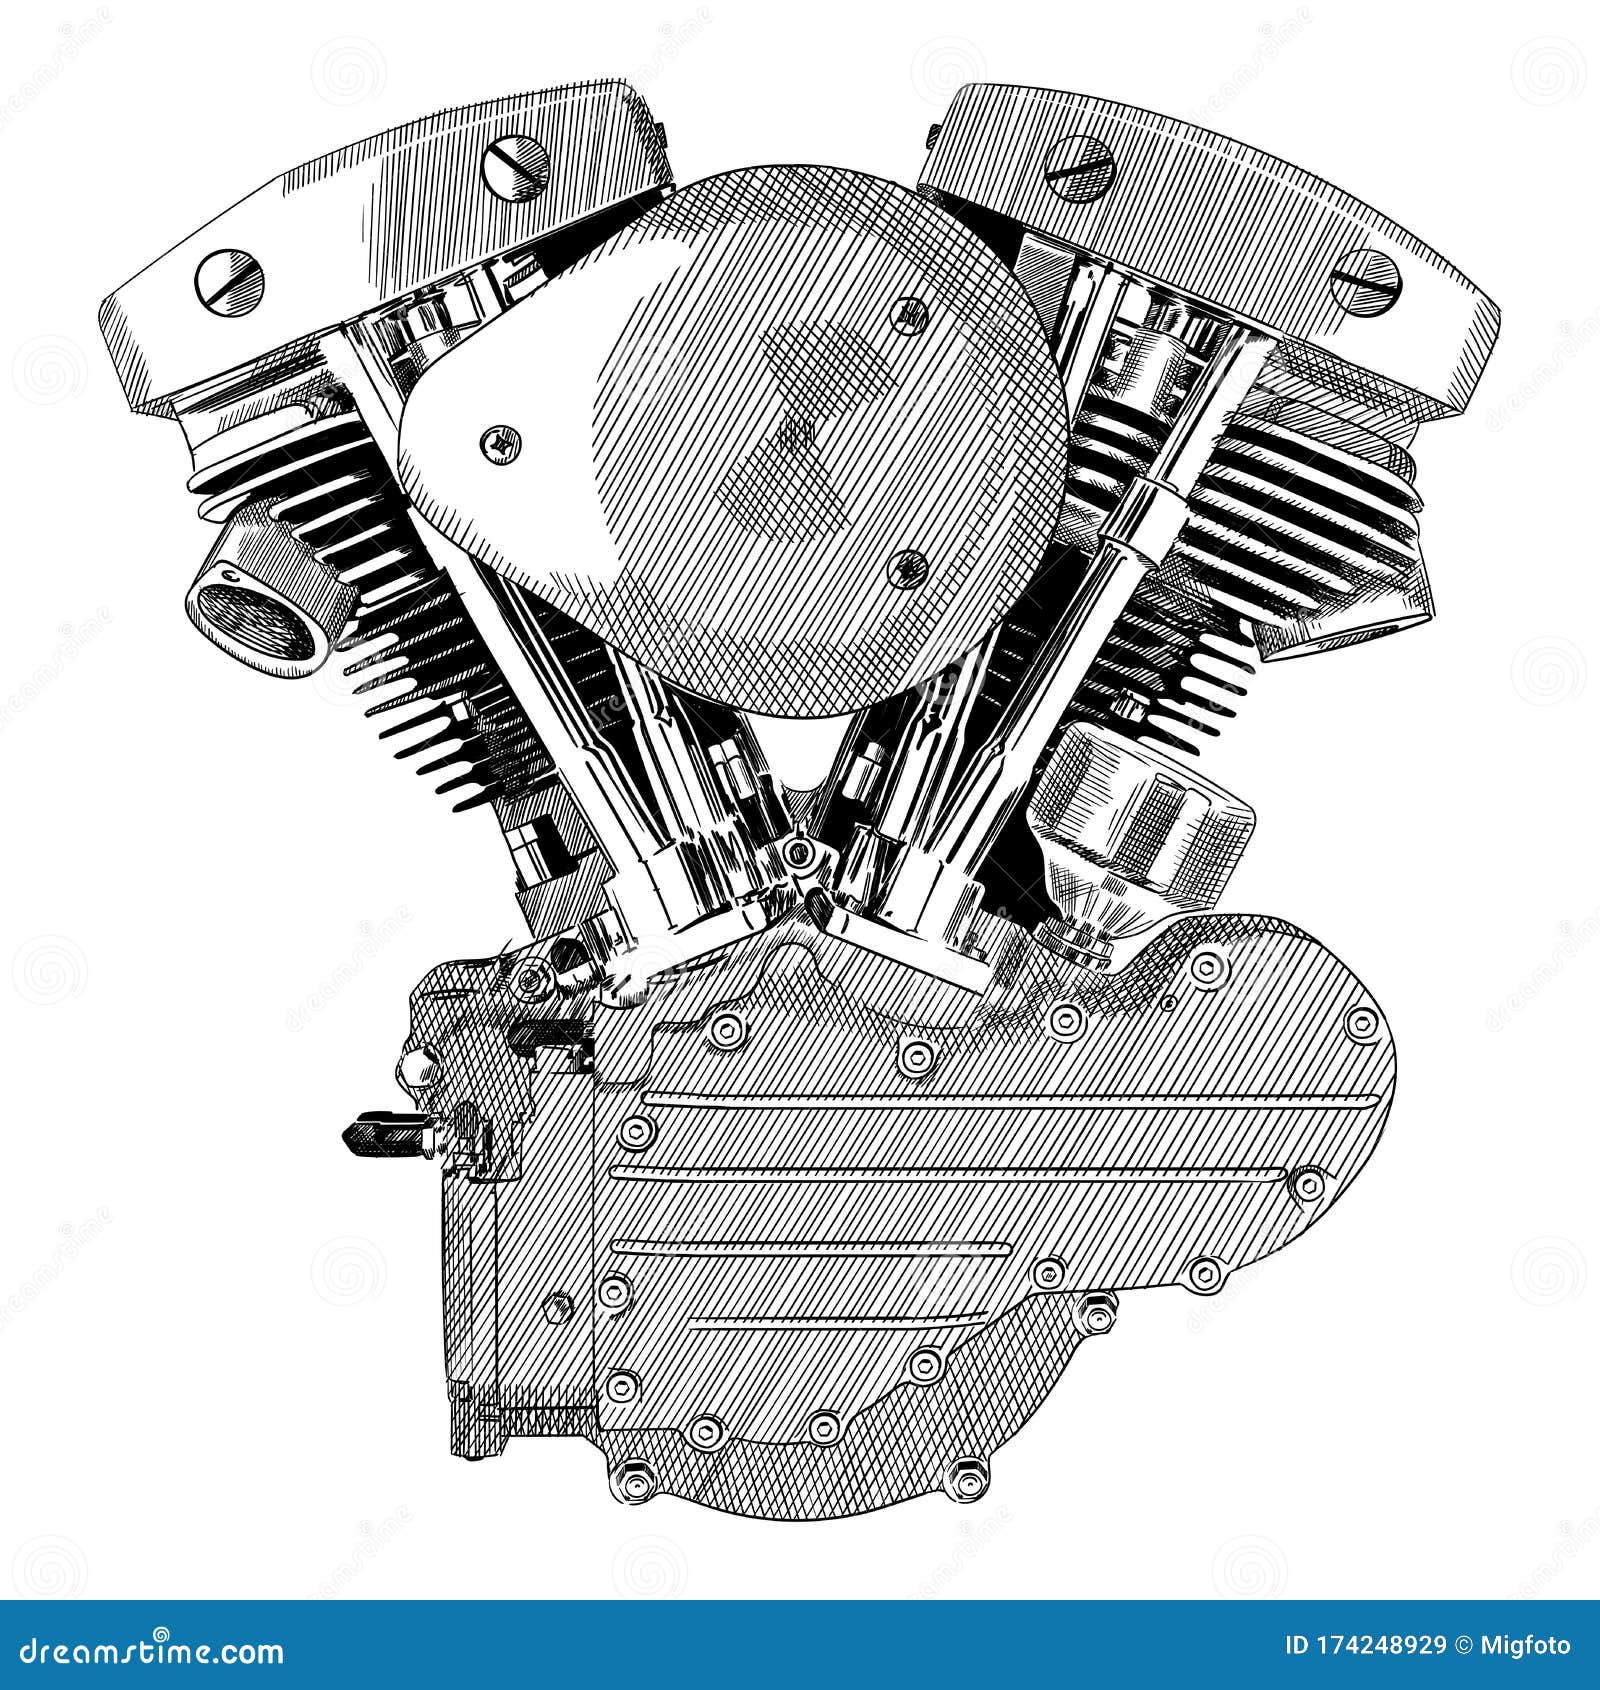 Baixar - Motor de moto — Ilustração de Stock #82045890